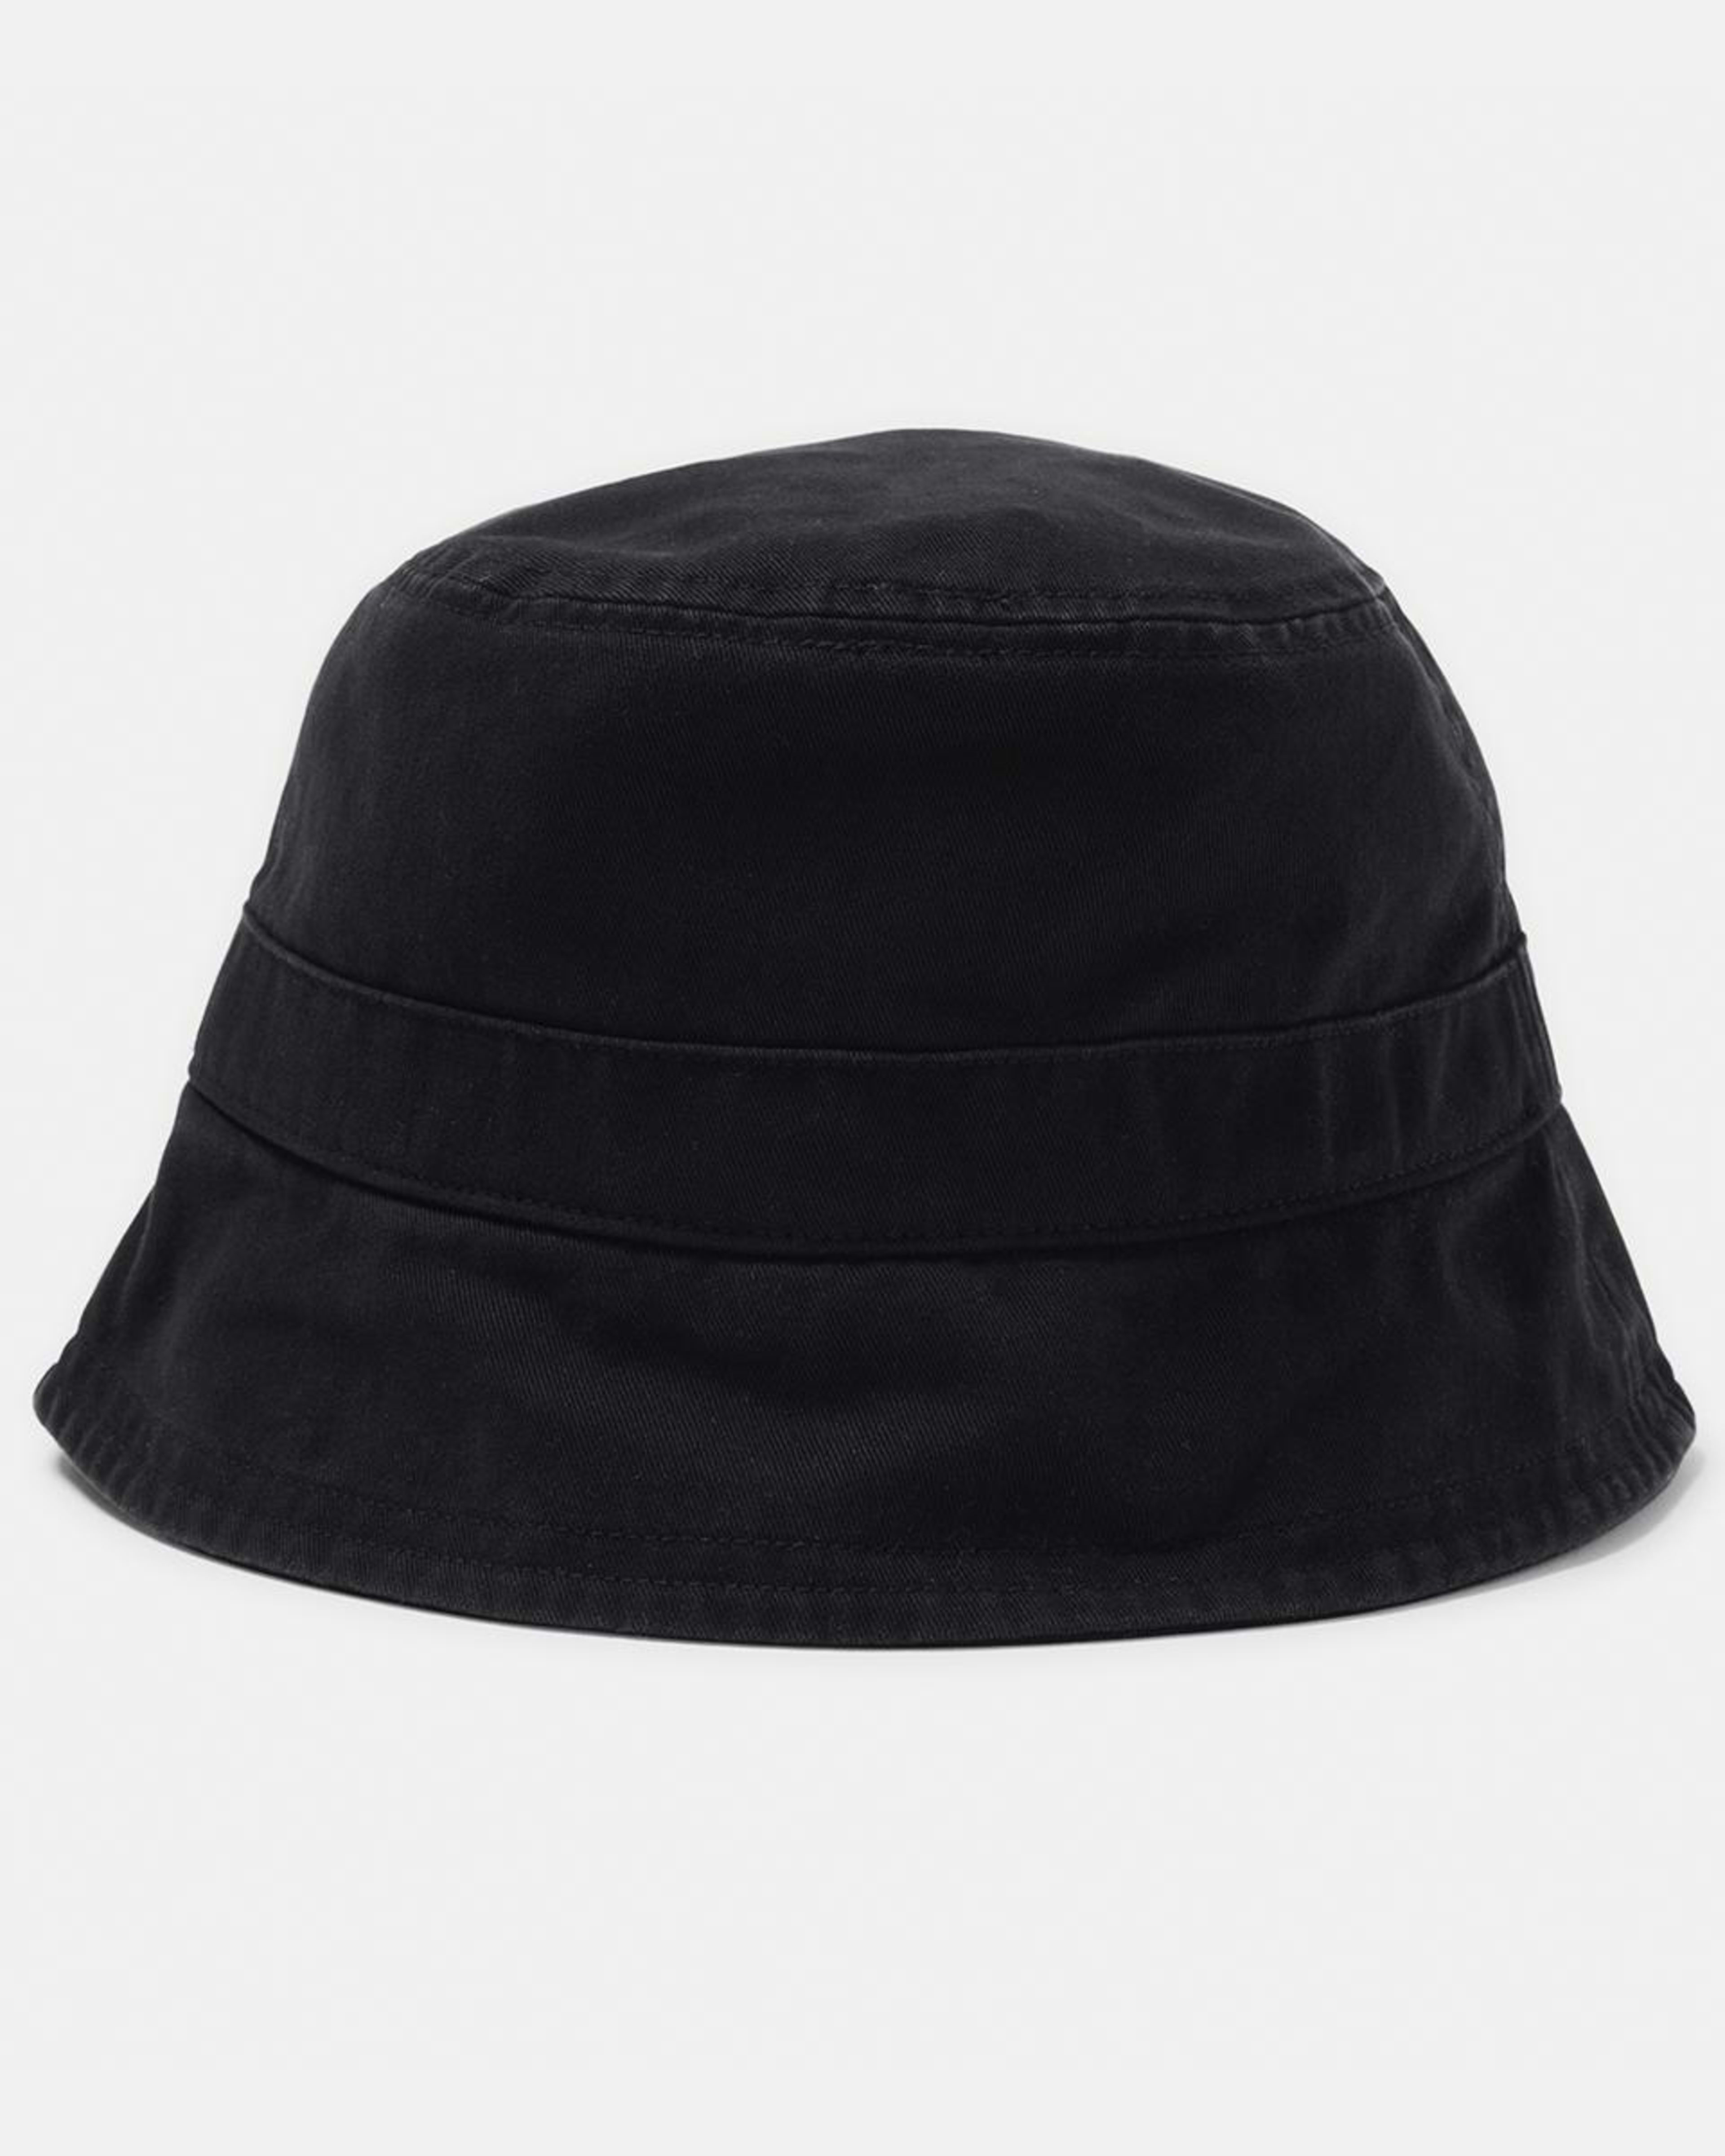 Bucket Hat - Kmart